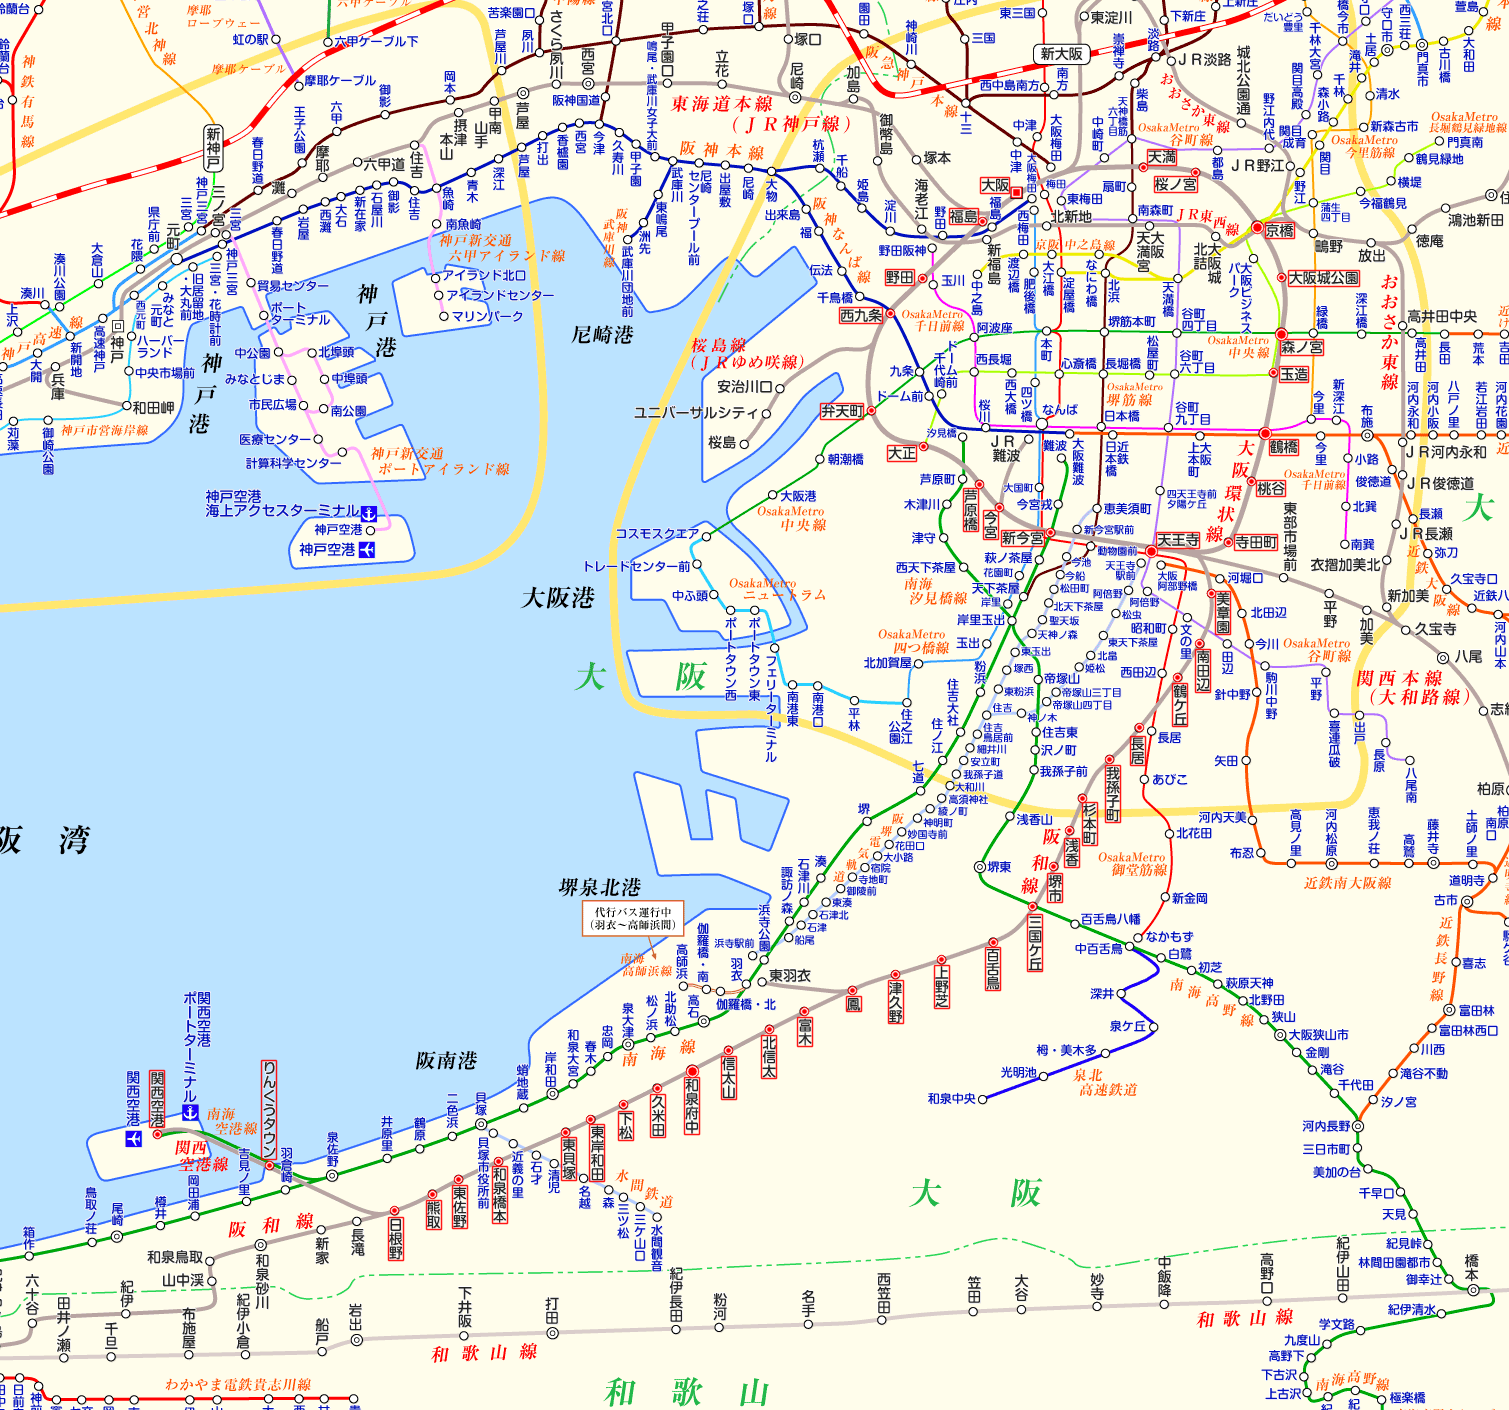 大阪環状線 関西空港行きの路線図